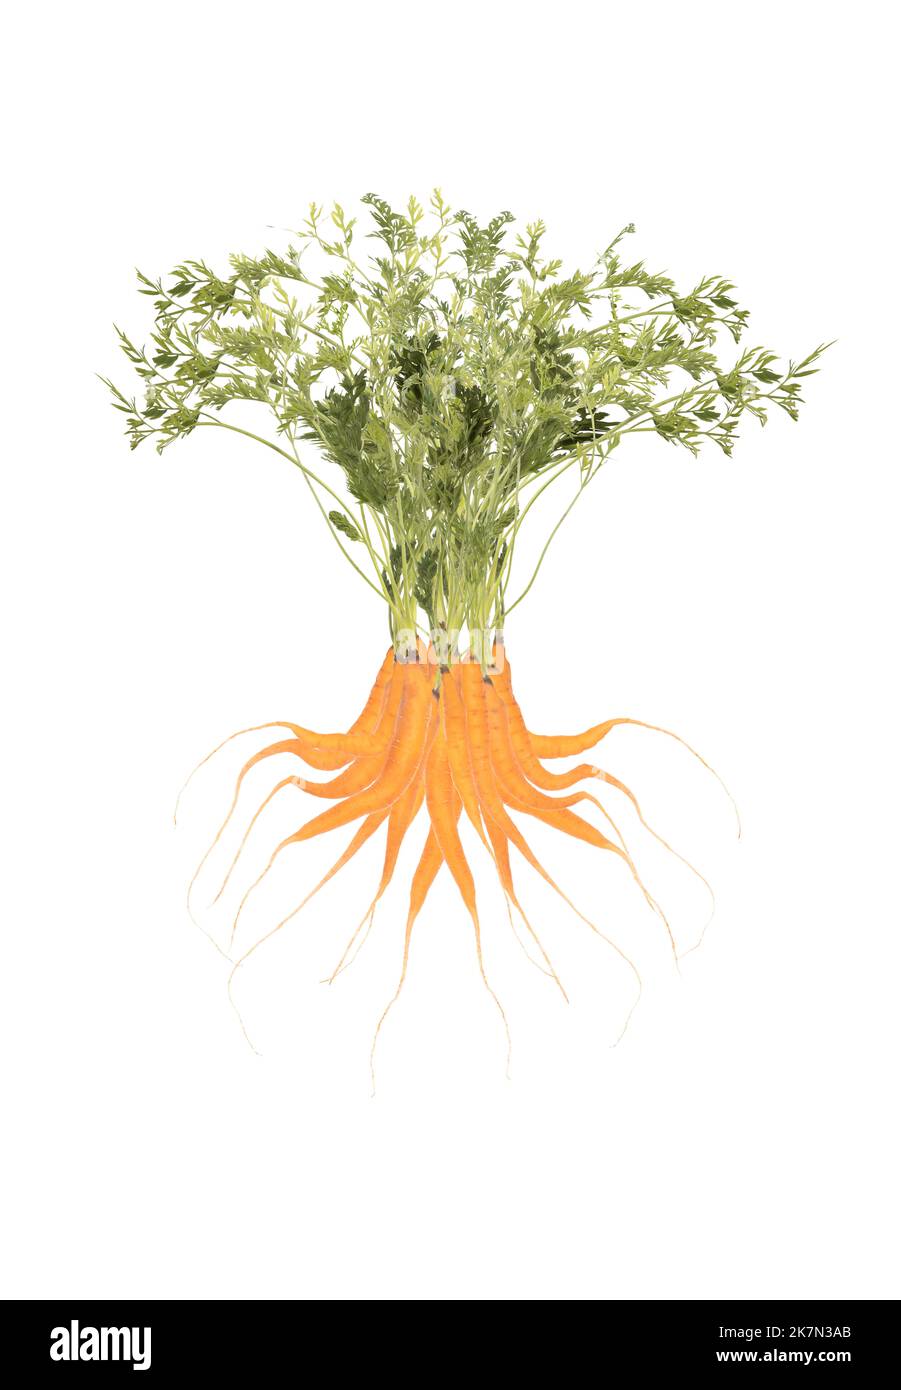 carrotsil, un arbre fait de carottes isolées sur blanc Banque D'Images